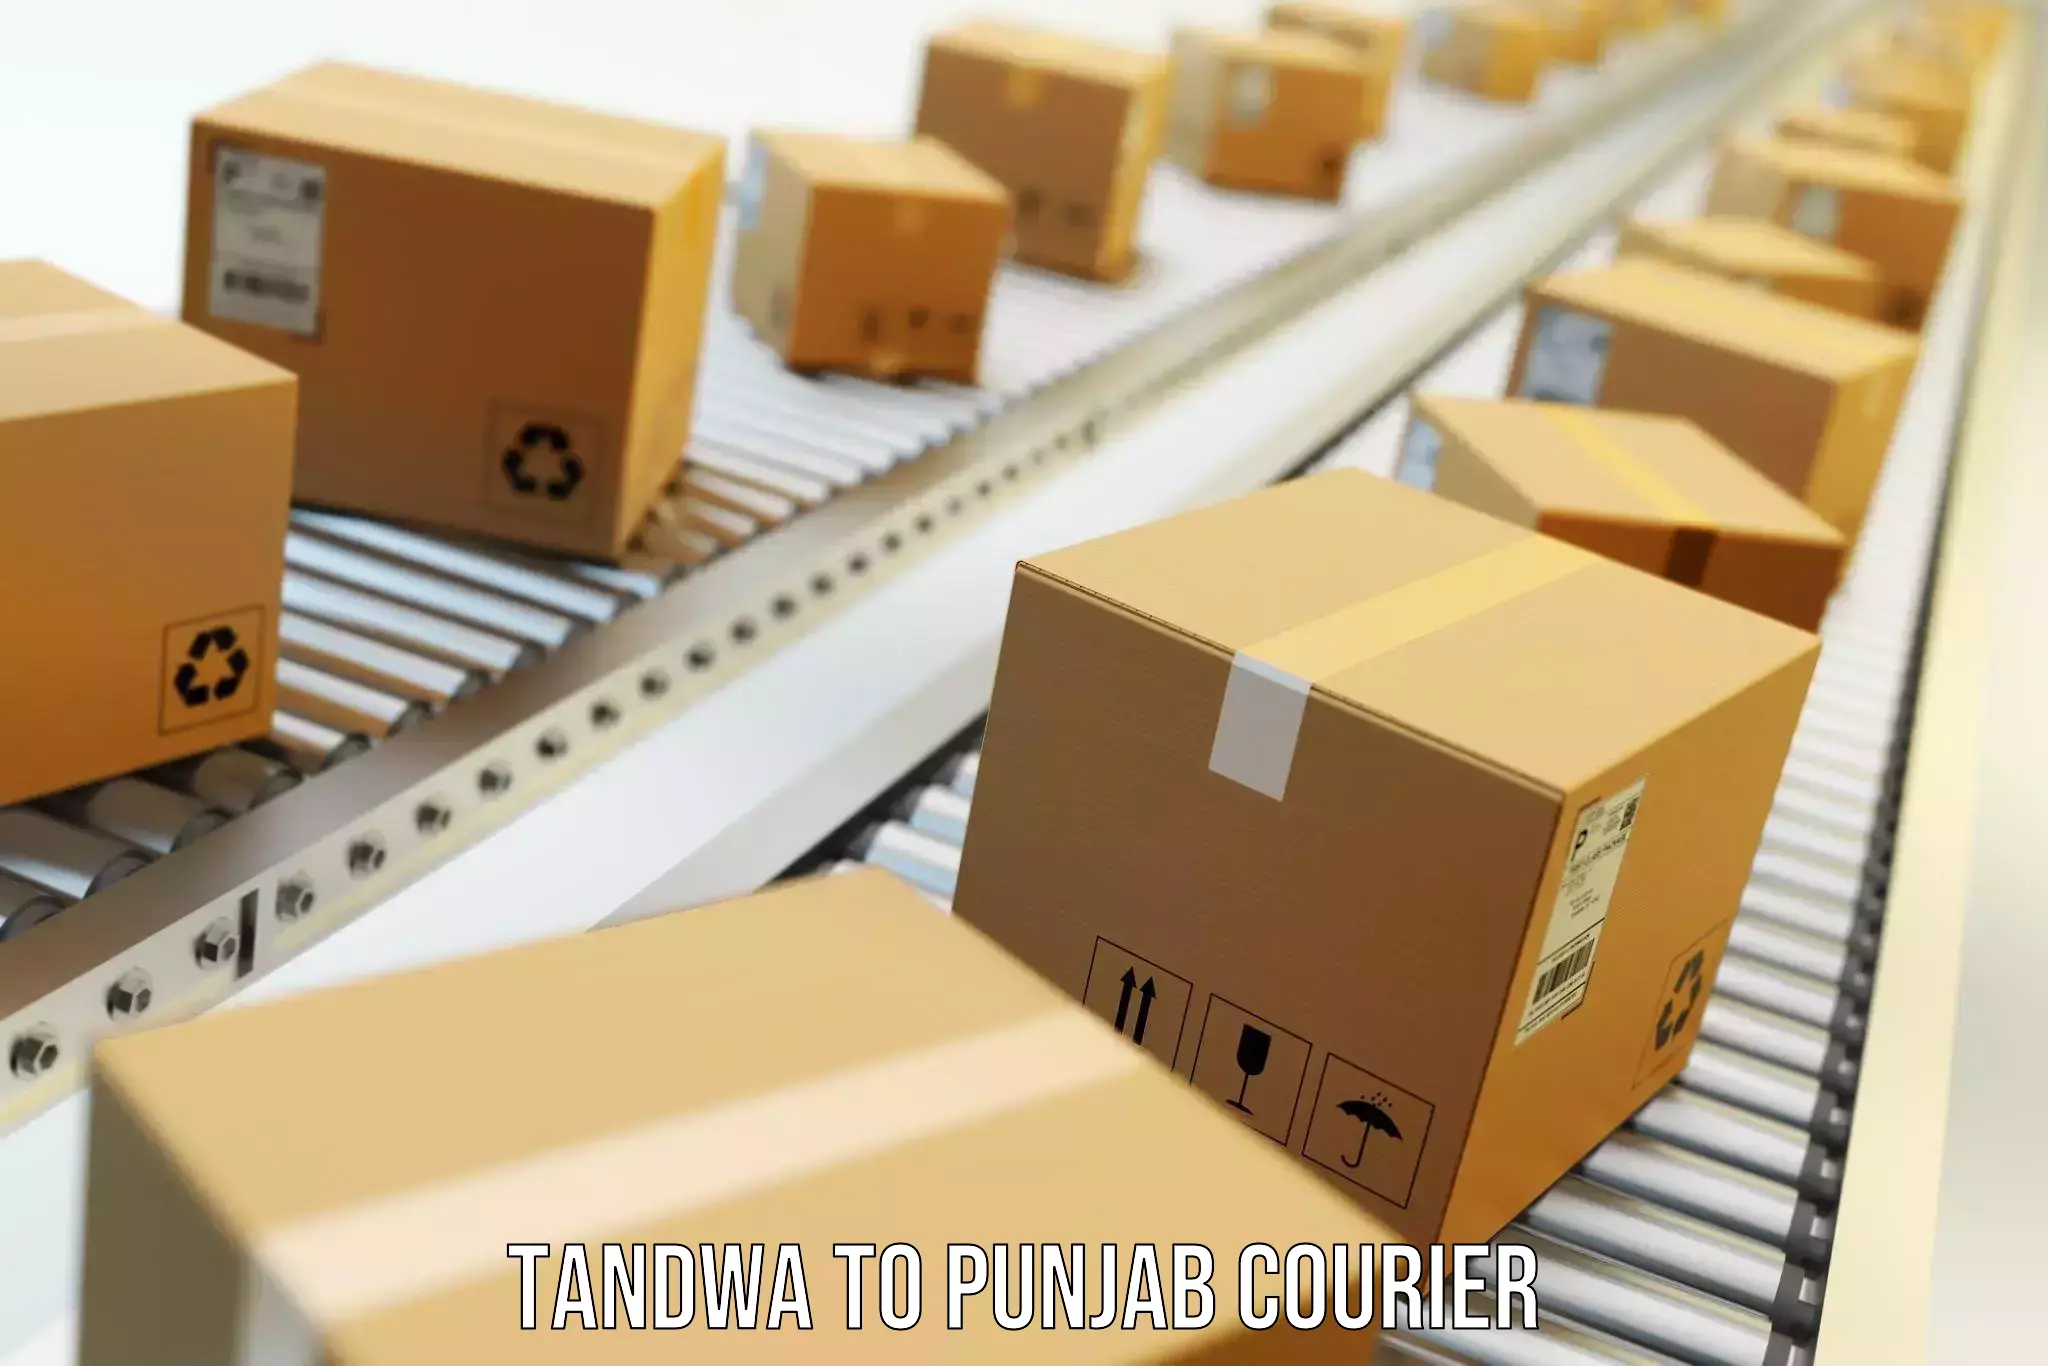 Household transport experts Tandwa to Punjab